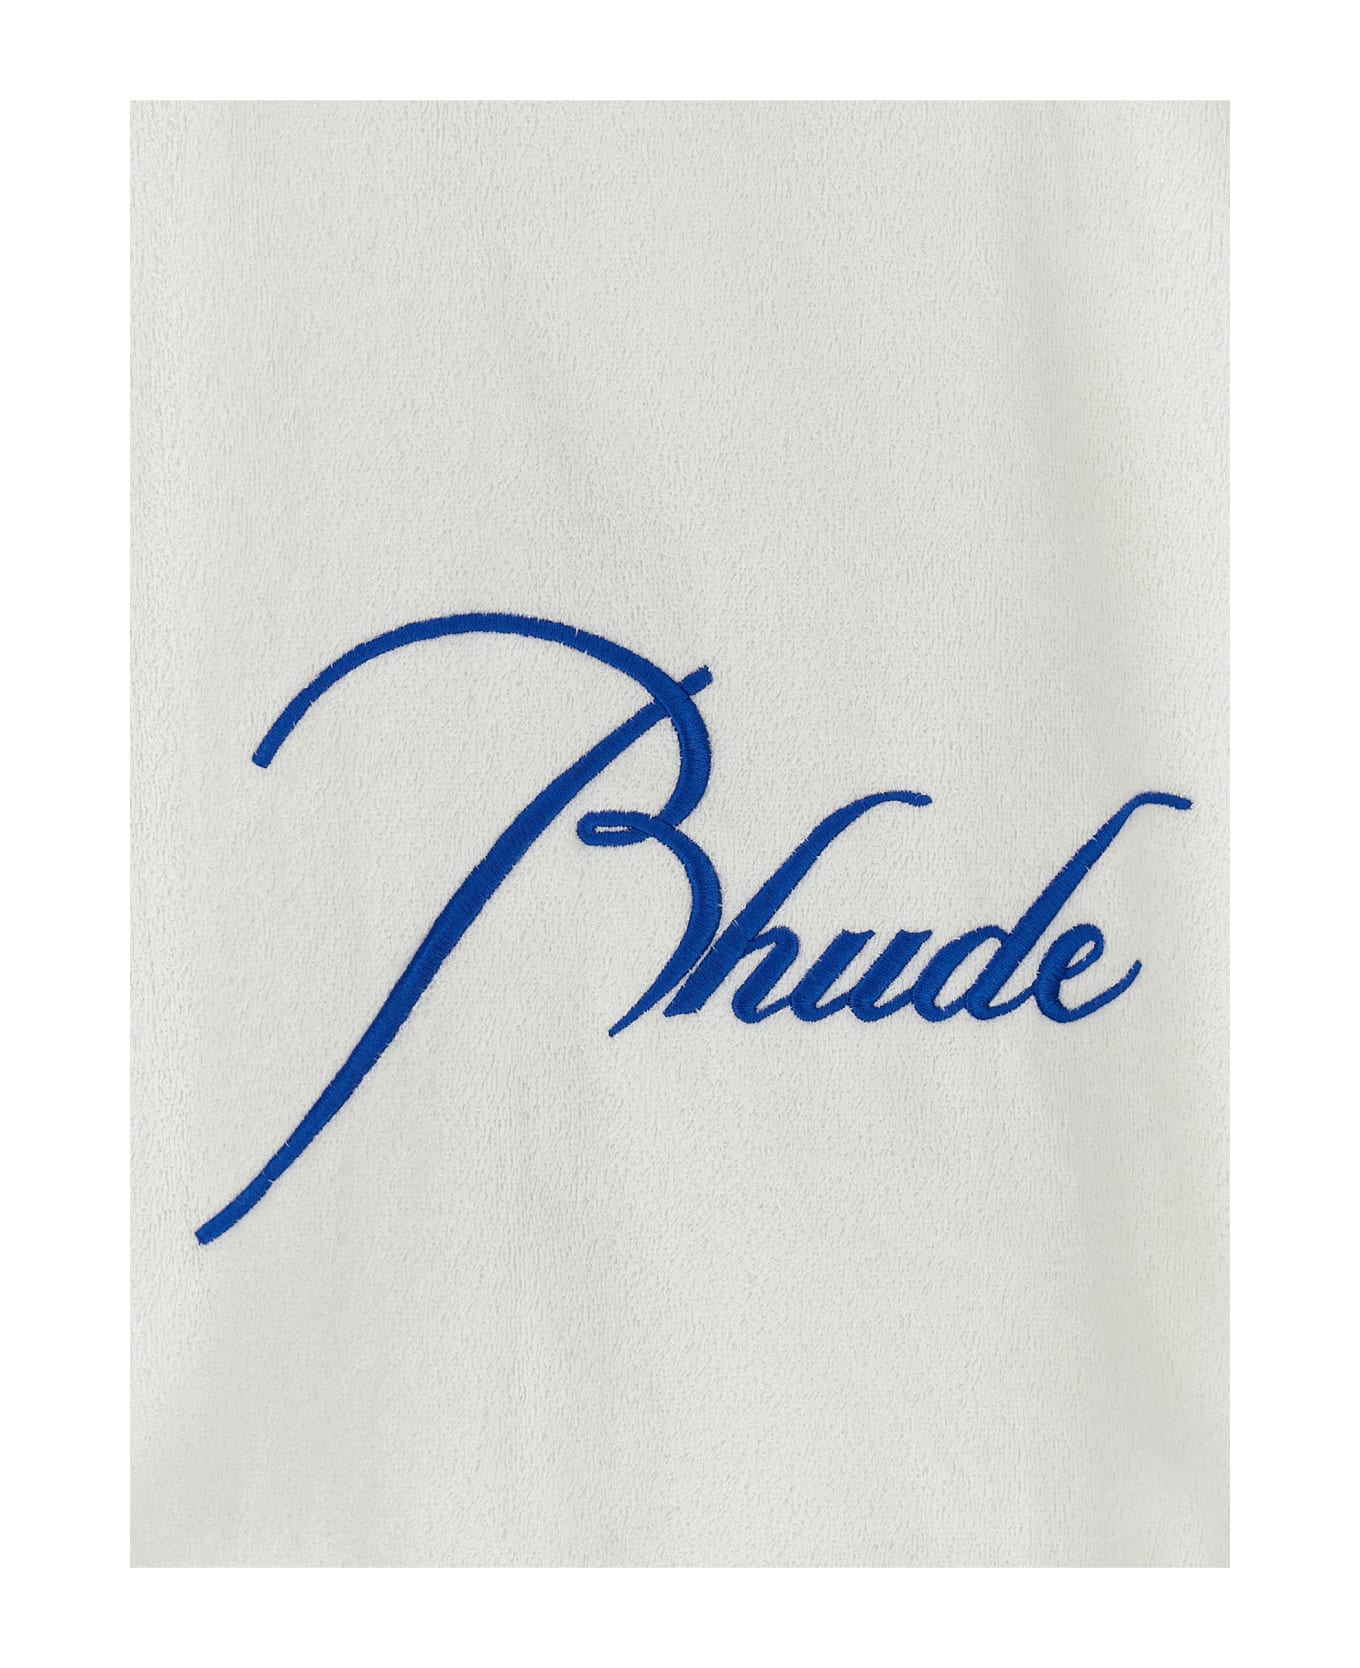 Rhude 'rhude Towel Rugby' Sweatshirt - White